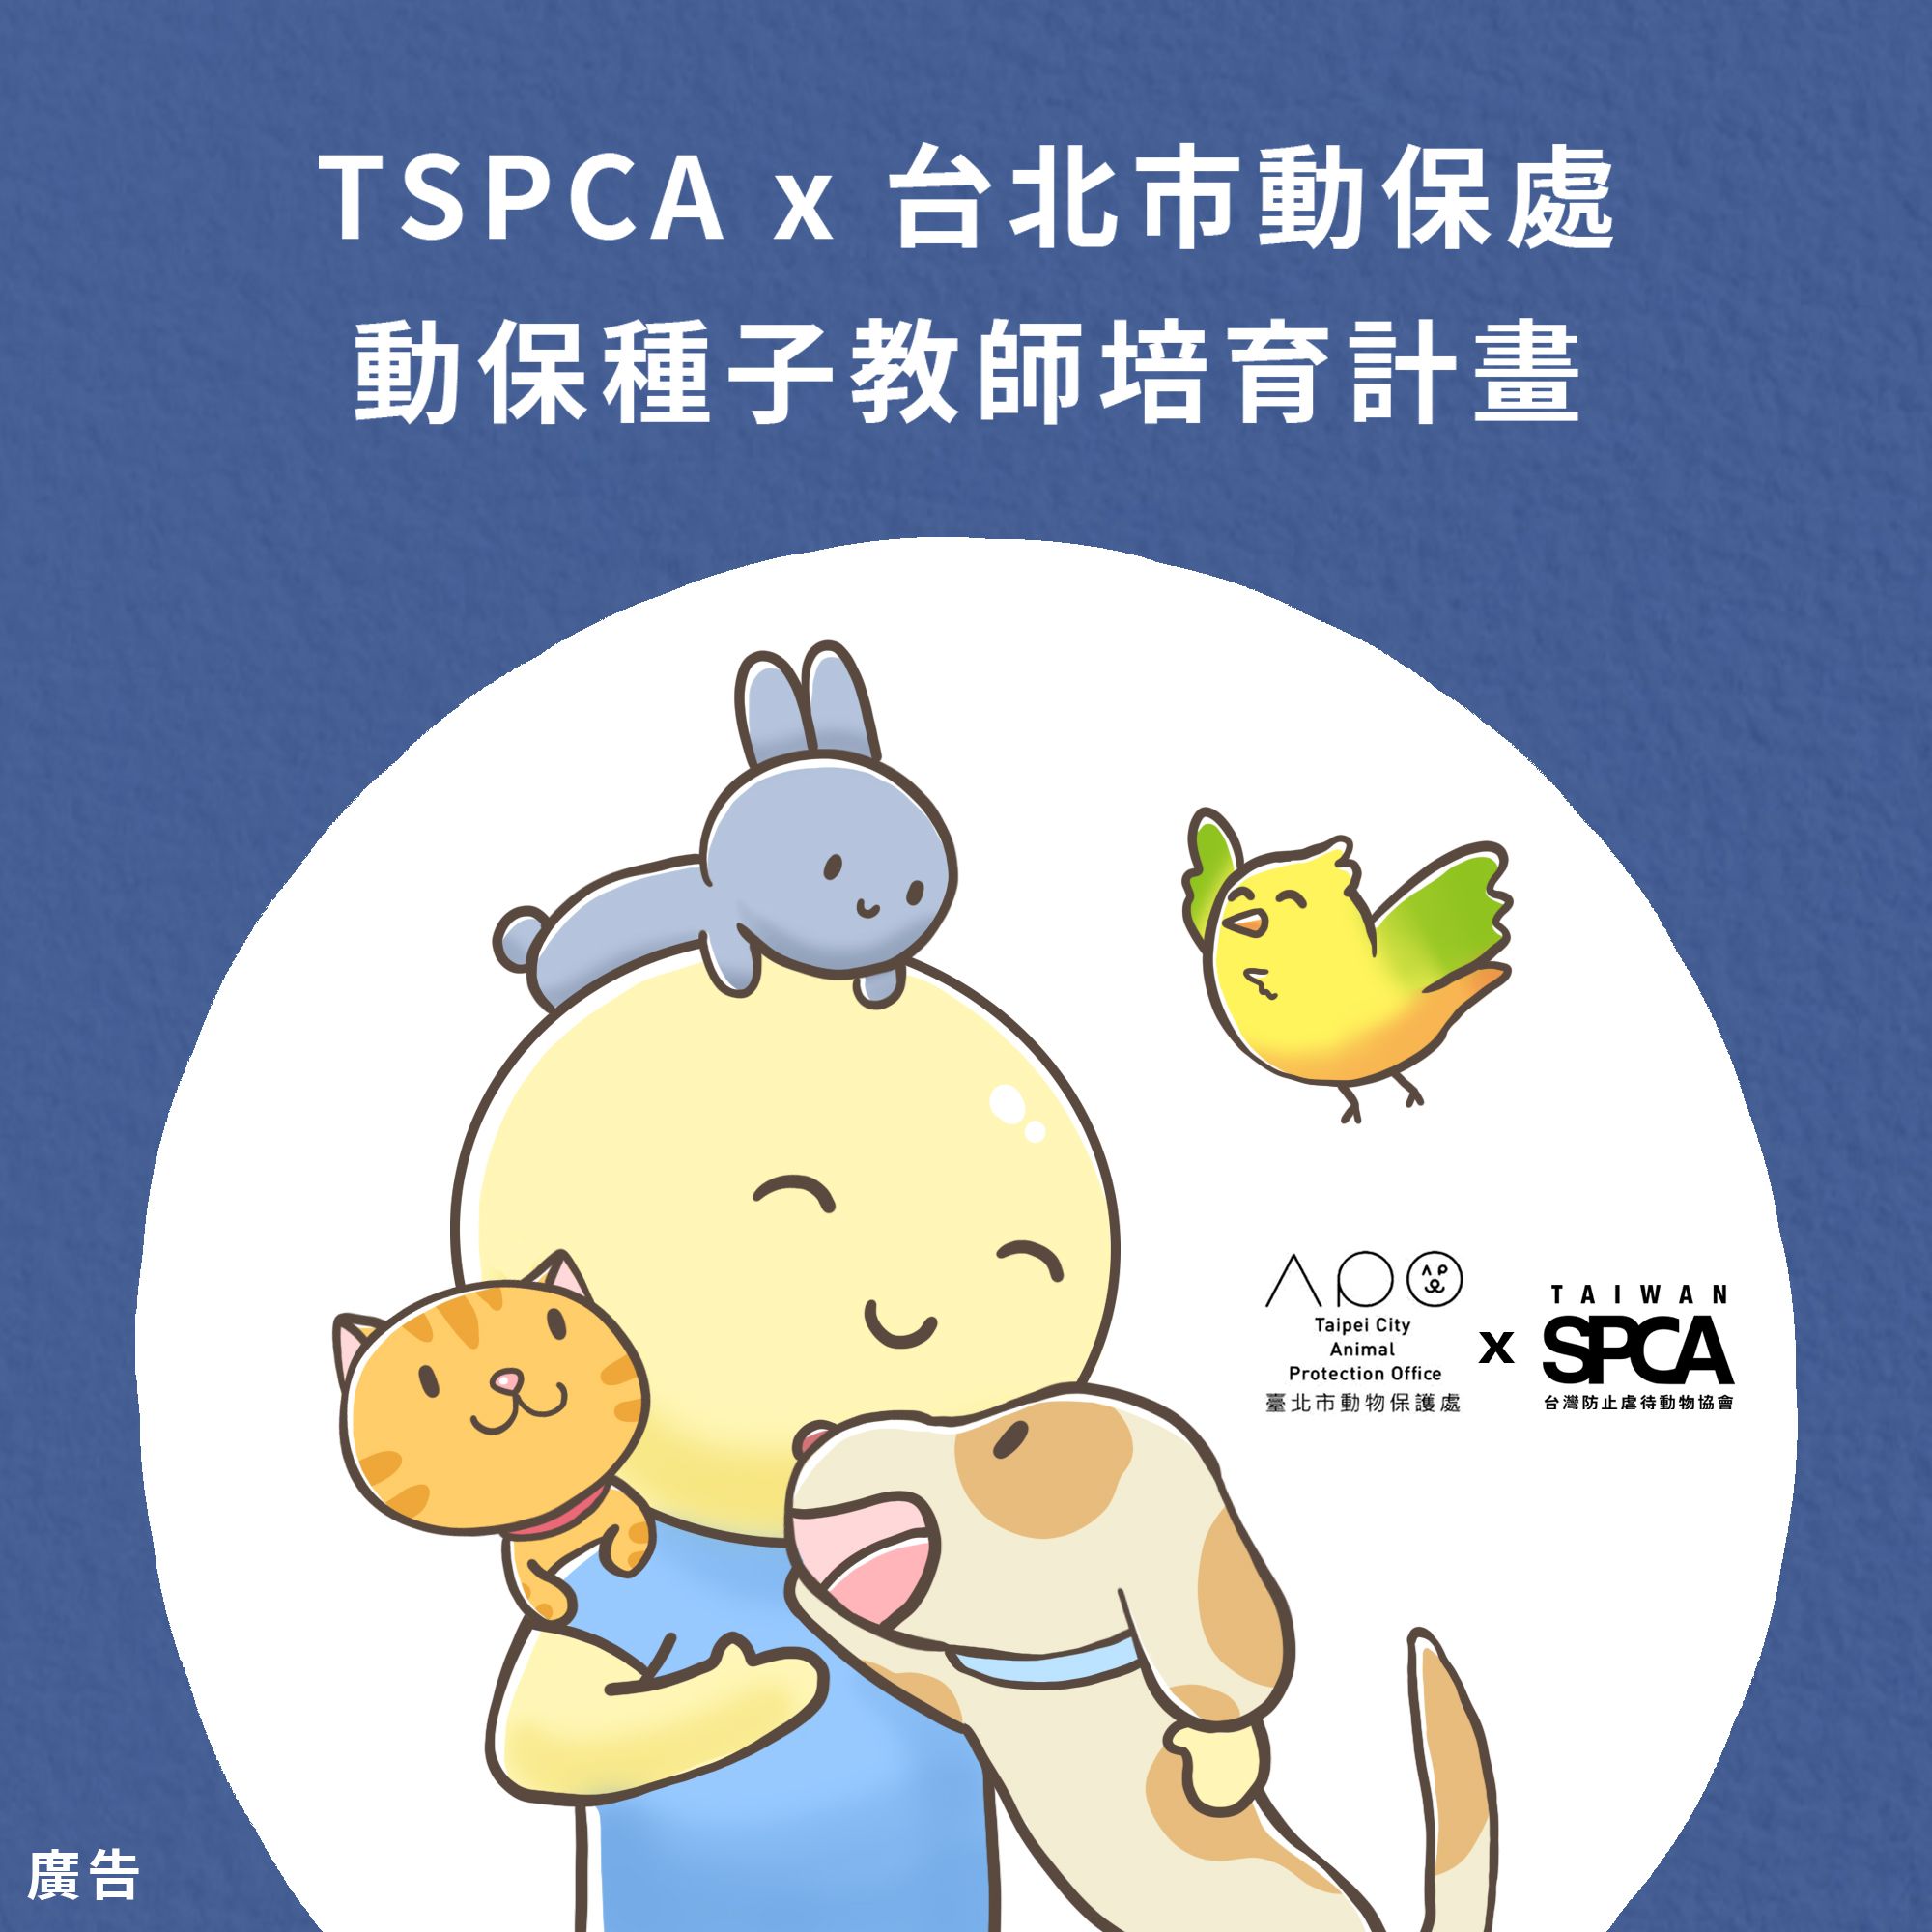 【熱烈進行中】TSPCA X 台北市動保處 2020動物保護種子教師培育計畫